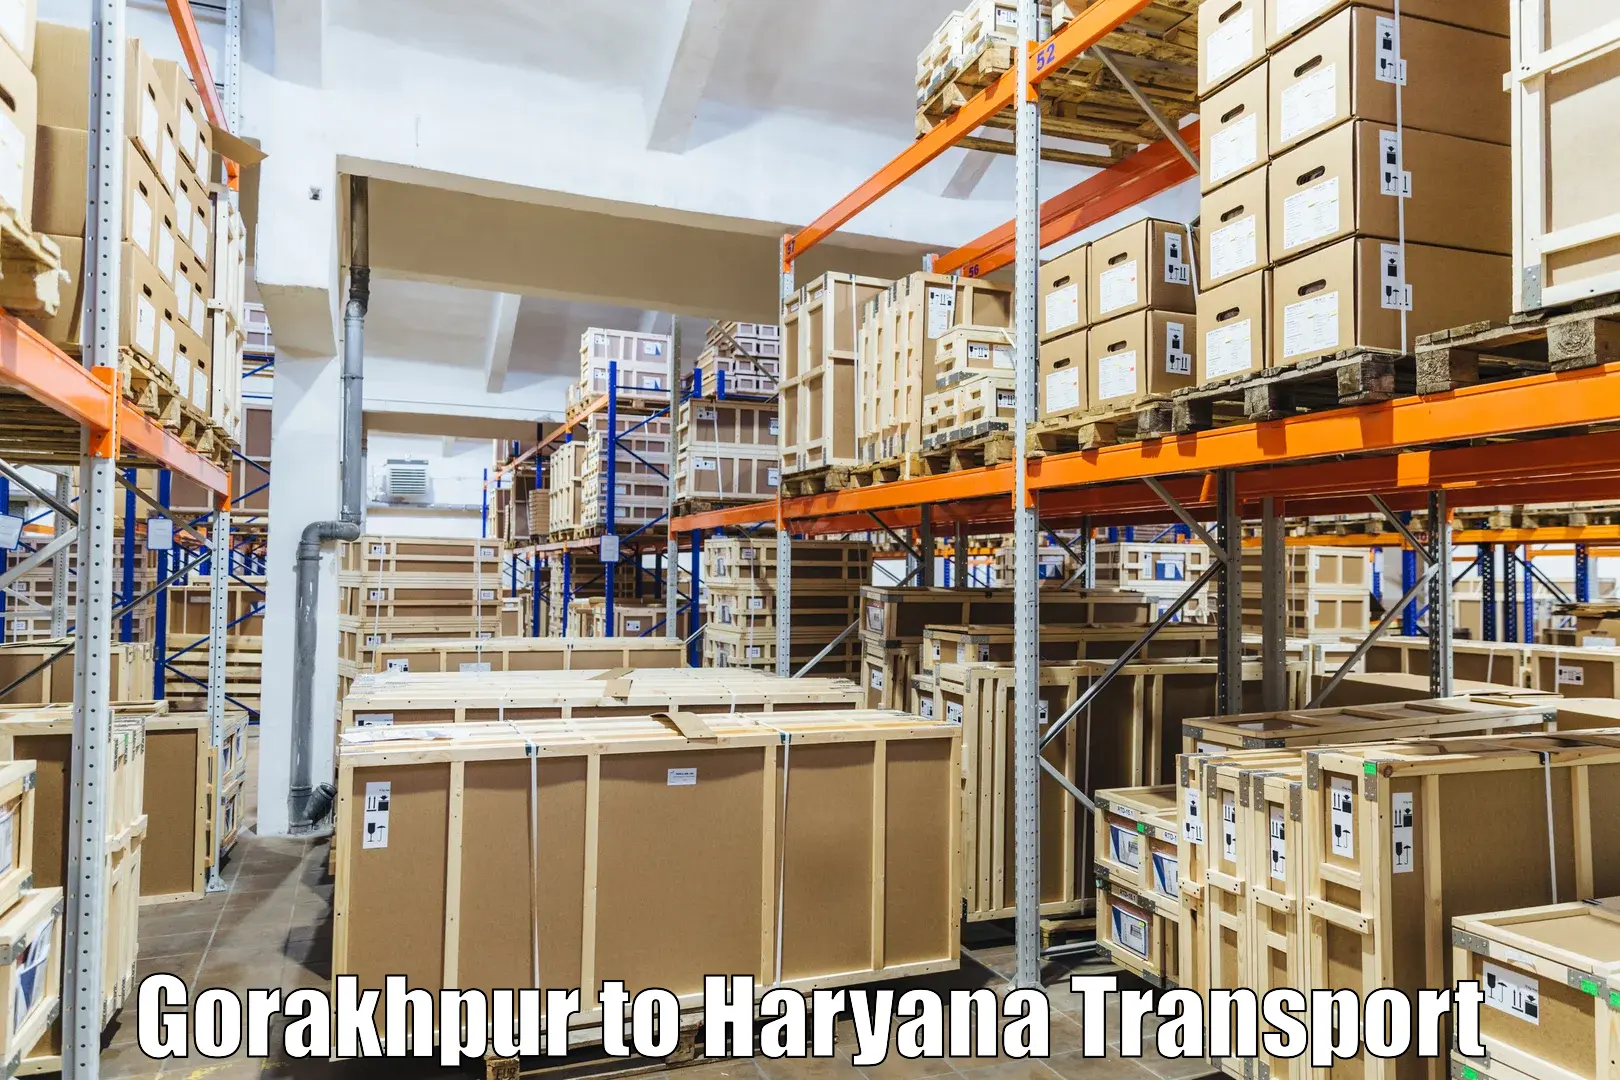 Bike shipping service Gorakhpur to Bilaspur Haryana